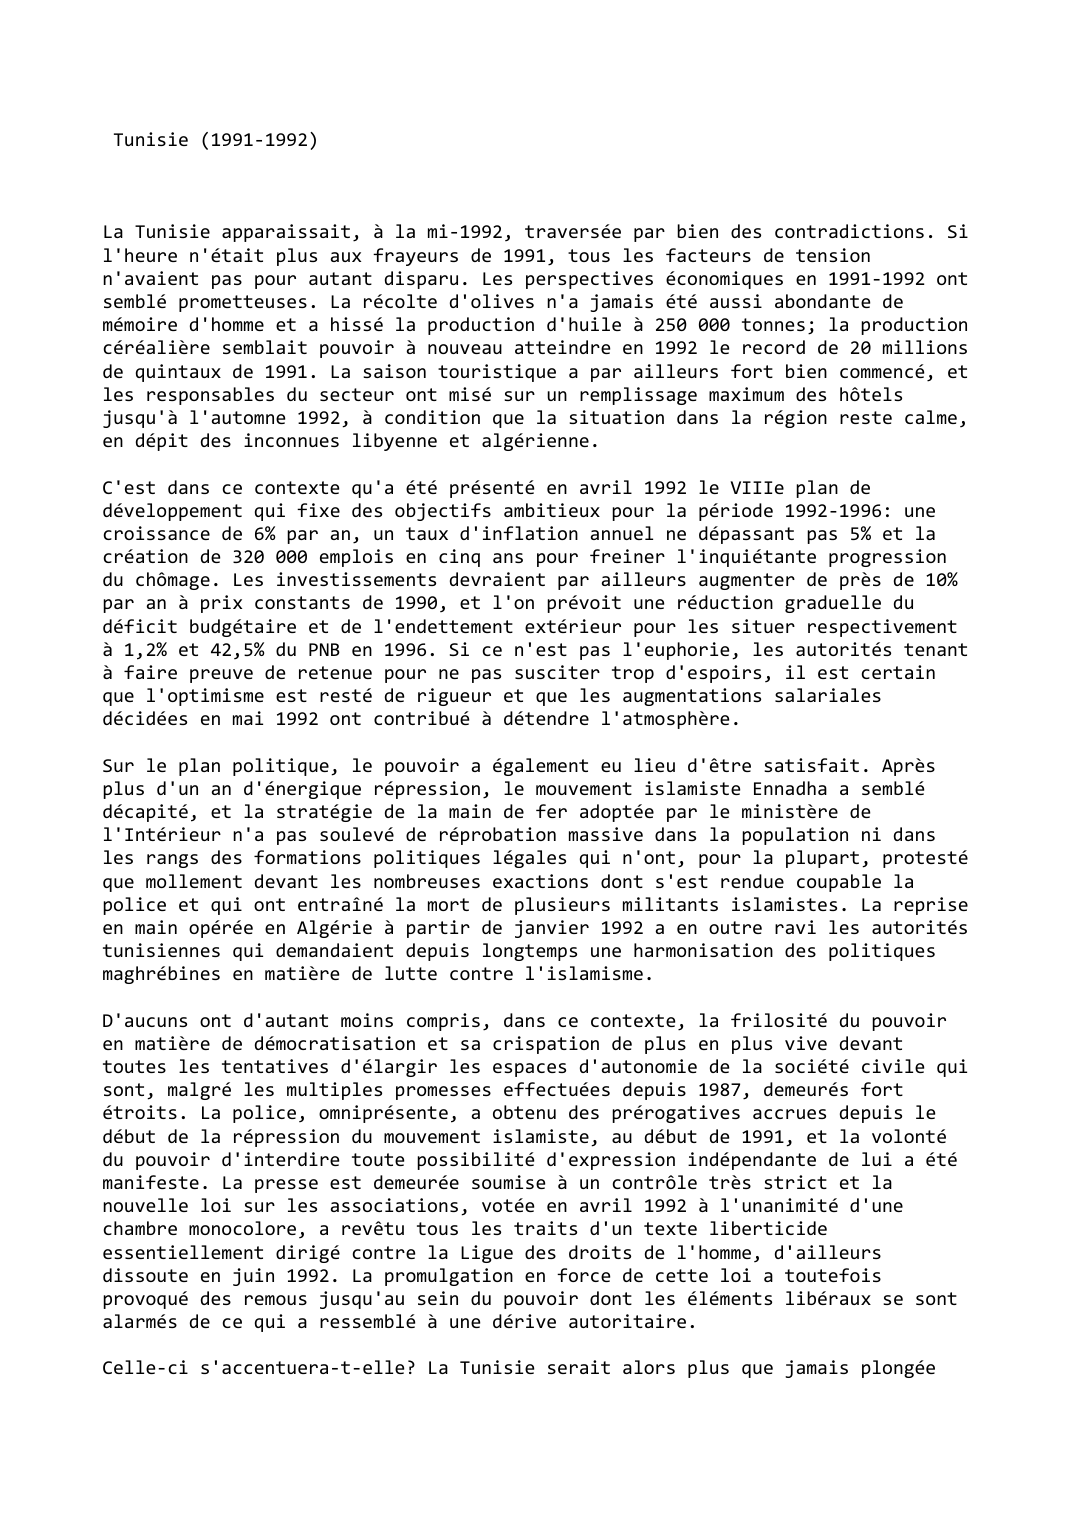 Prévisualisation du document Tunisie (1991-1992)